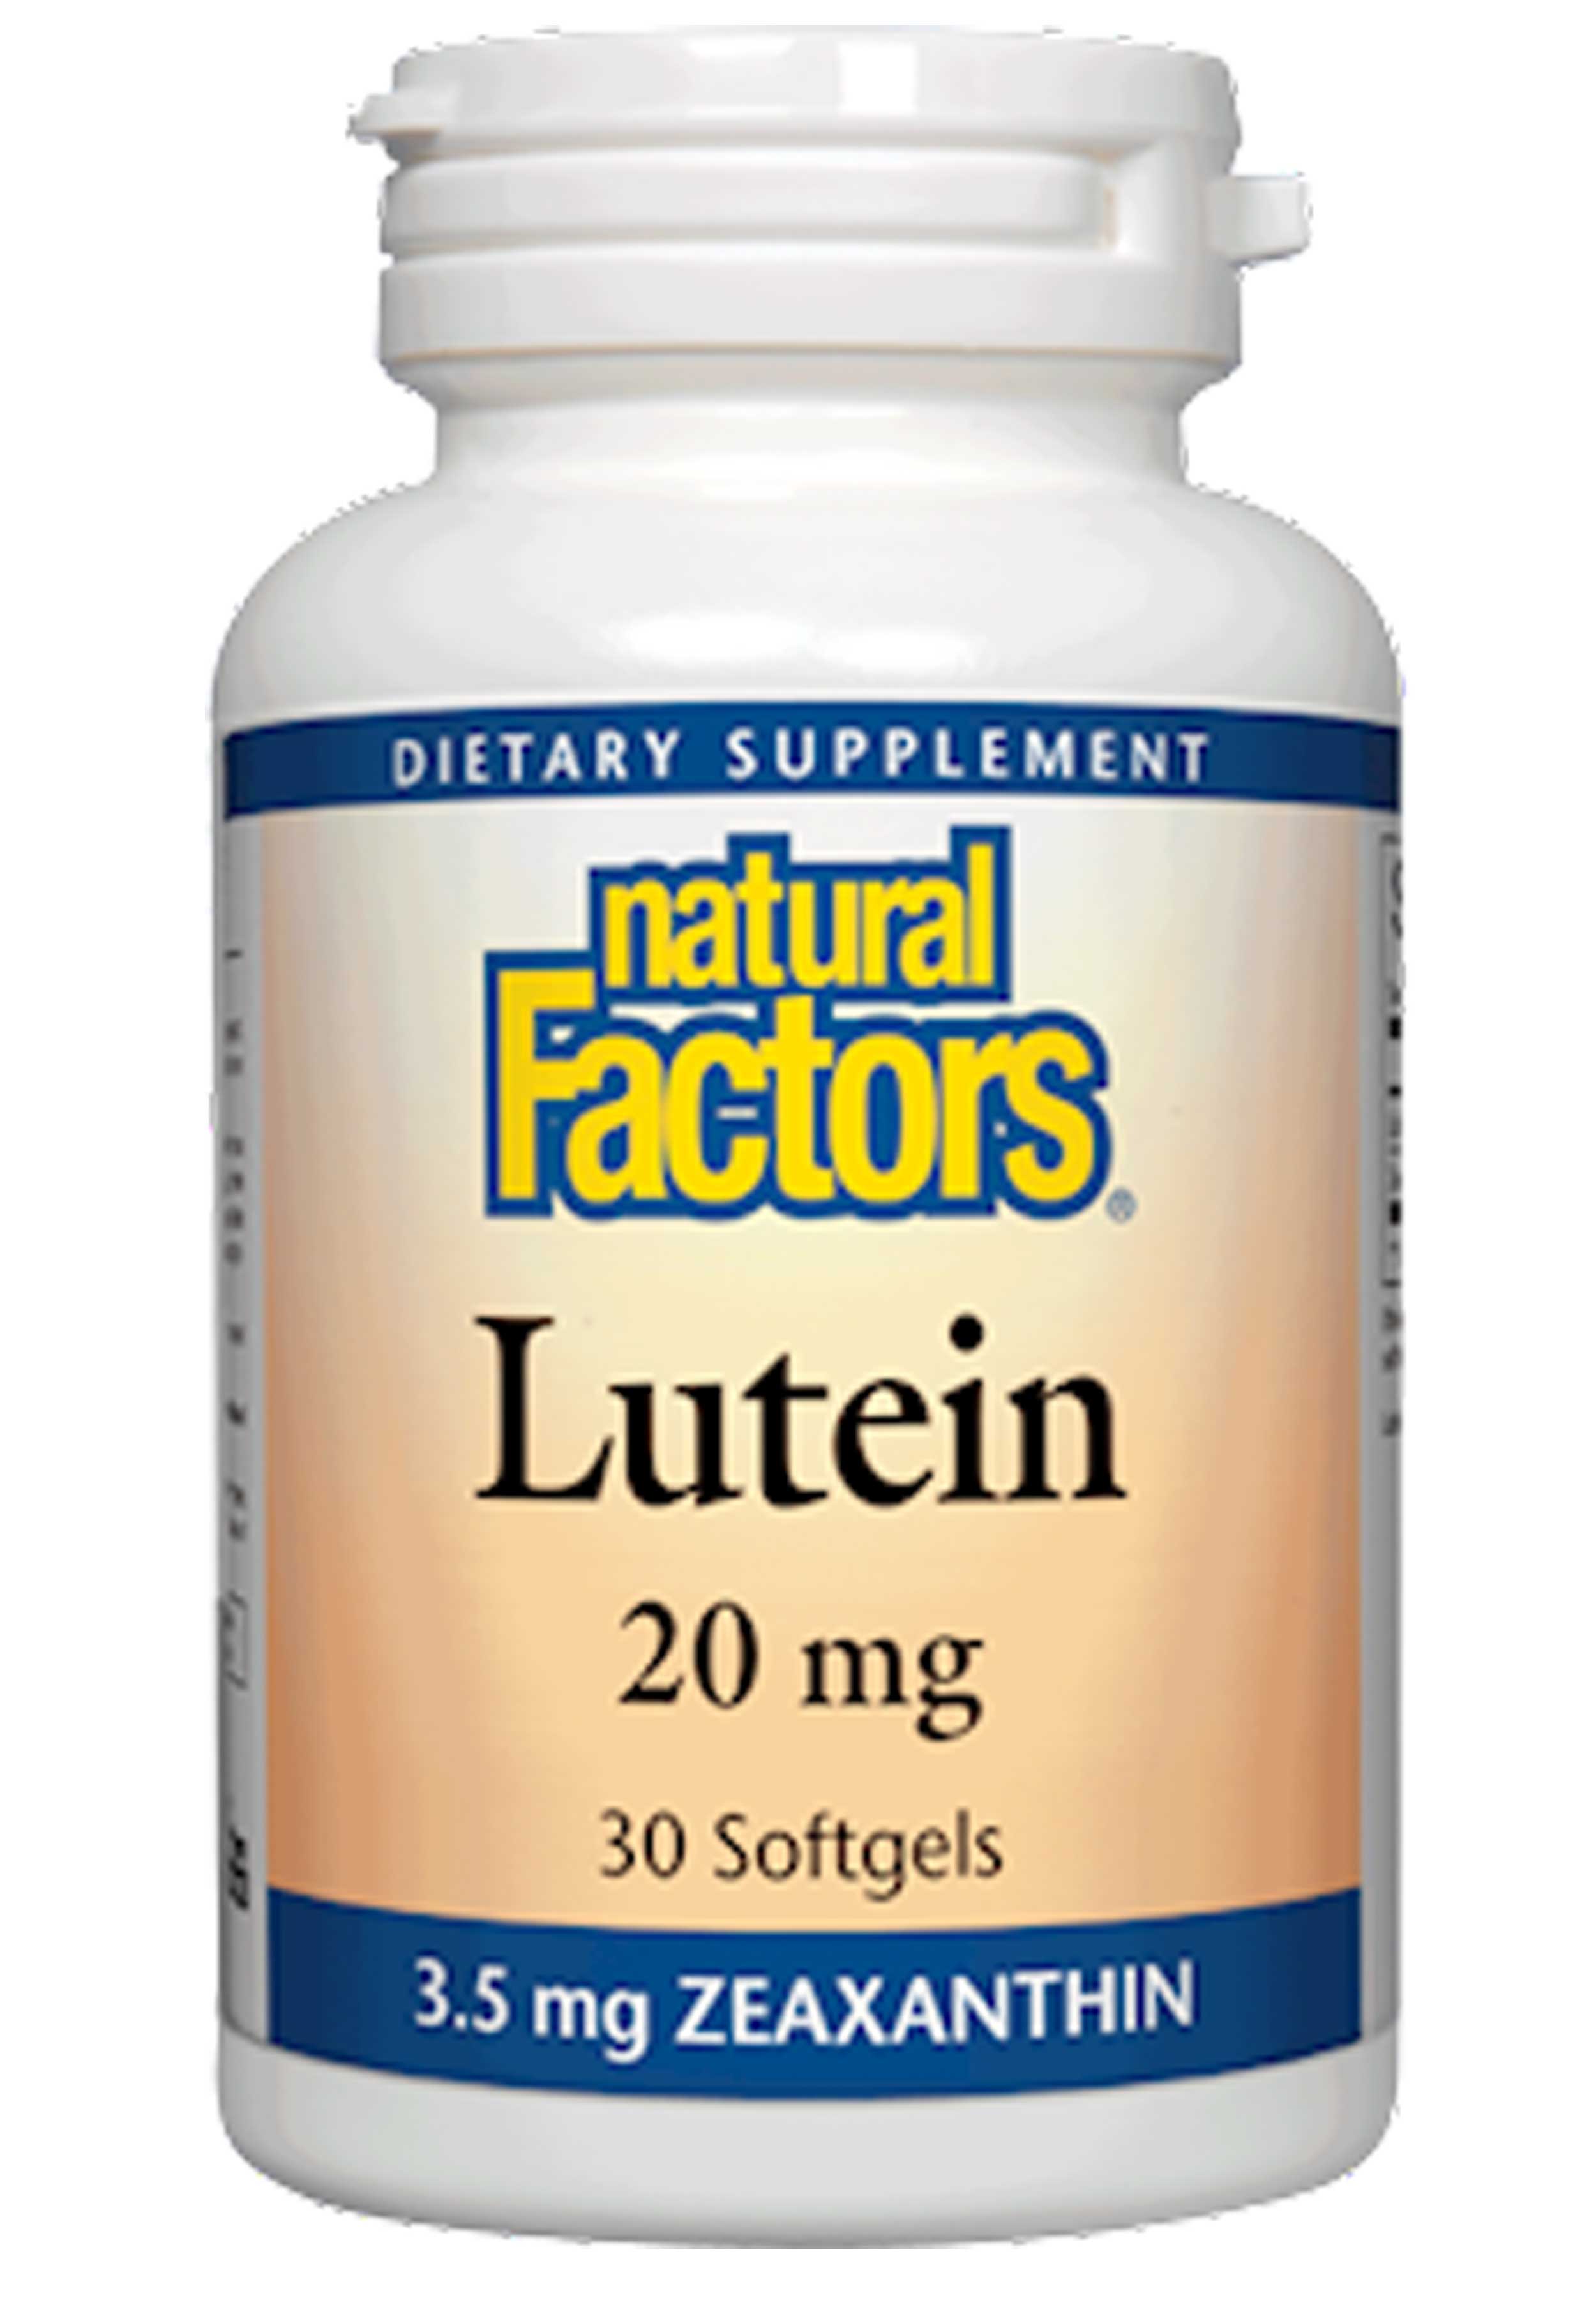 Natural Factors Lutein 20 mg